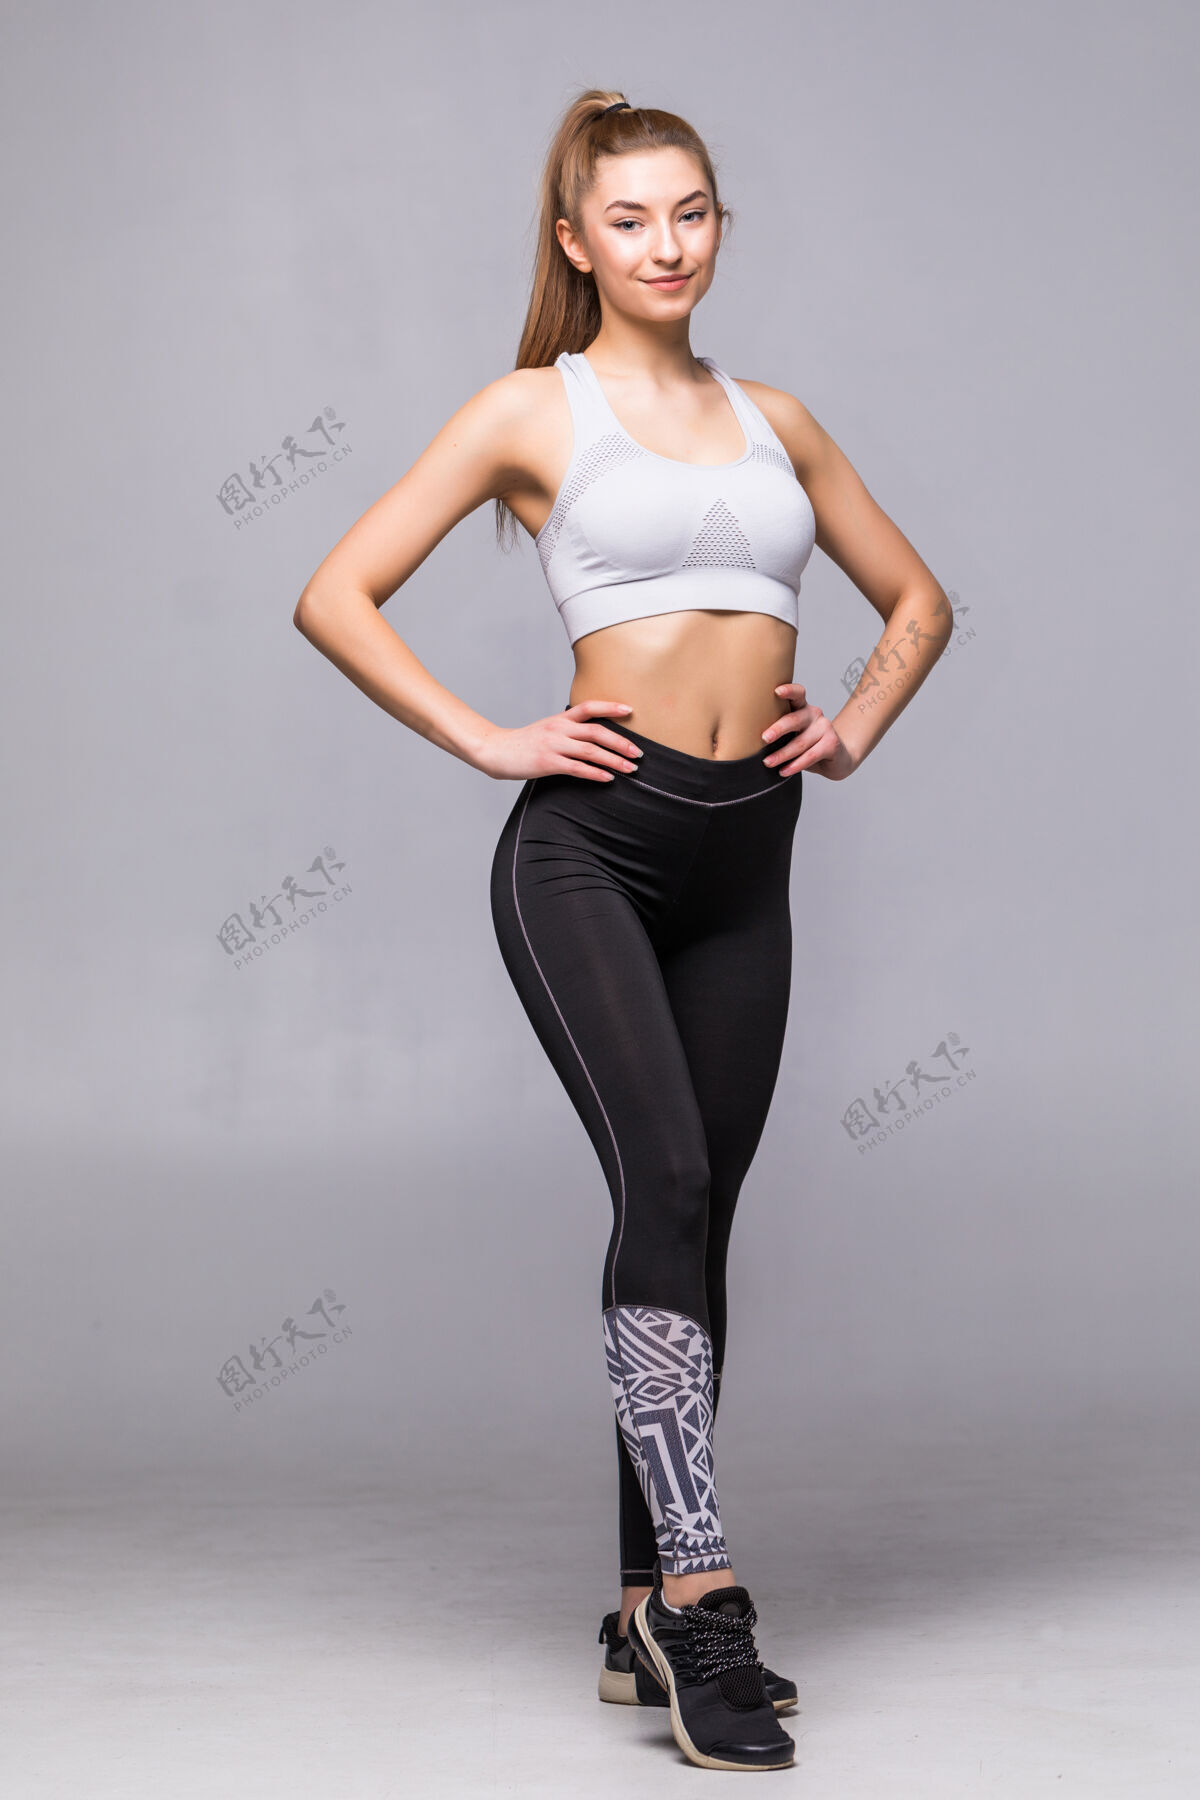 运动全身年轻开朗微笑的女子穿着运动服 与世隔绝快乐体重人